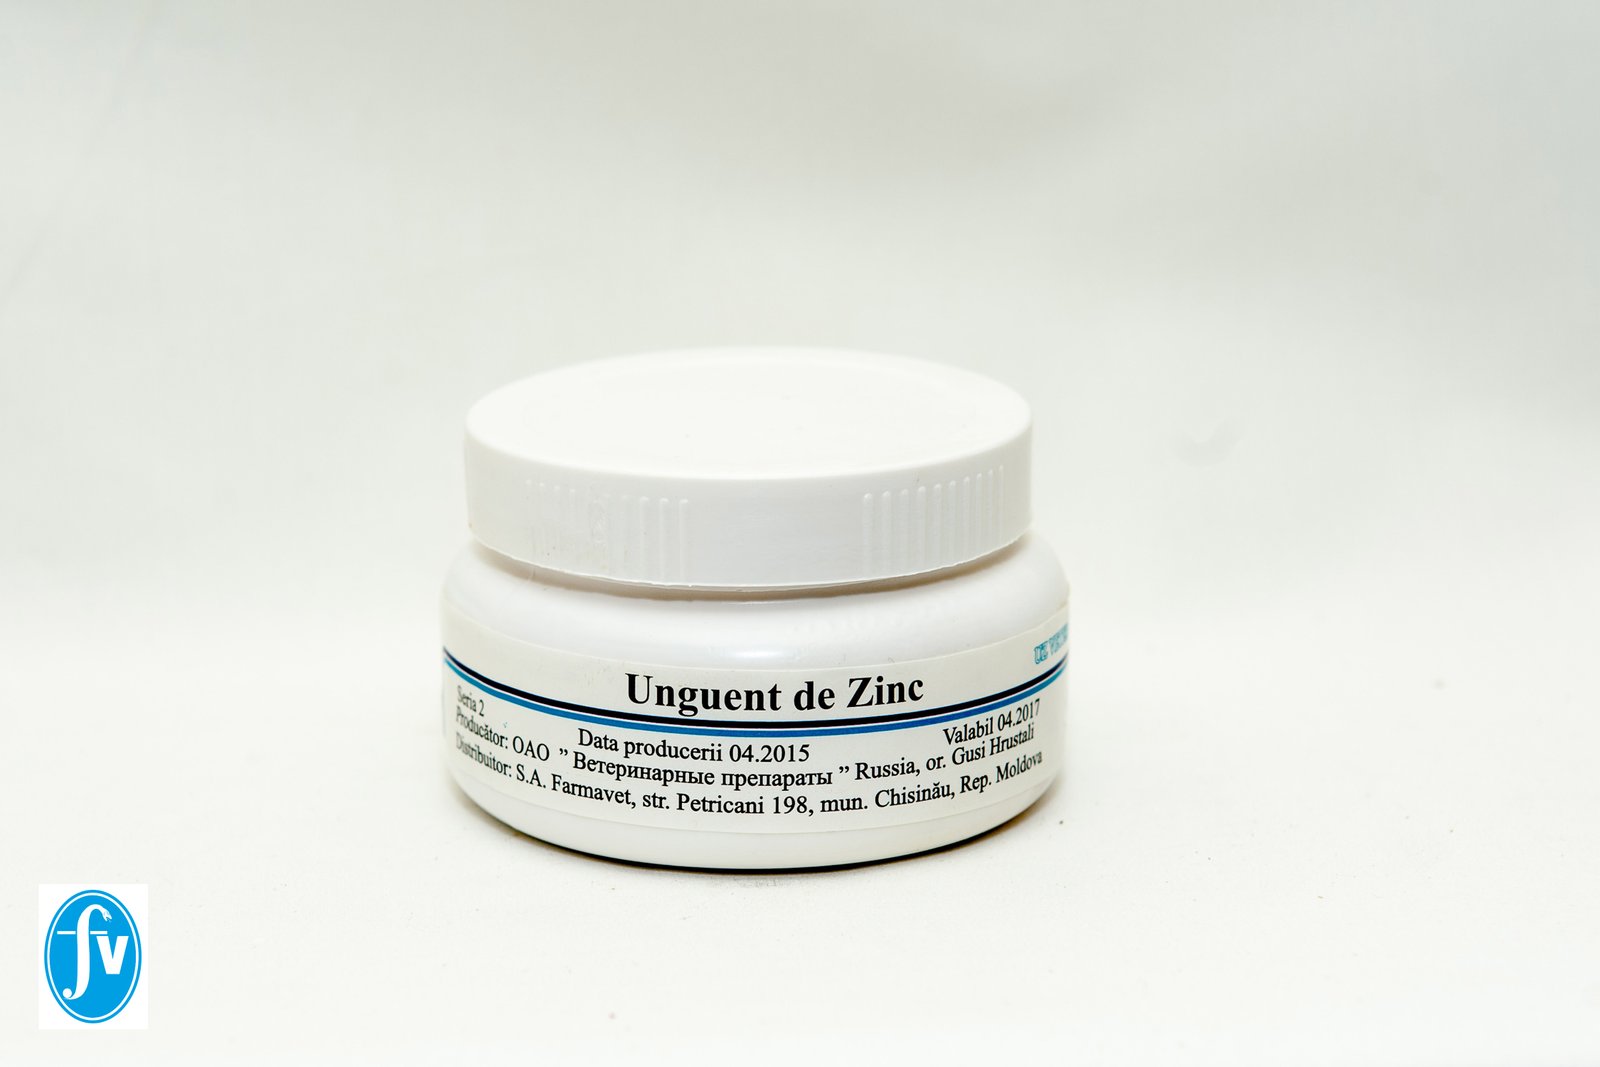 tratamentul viermilor cu unguent de zinc